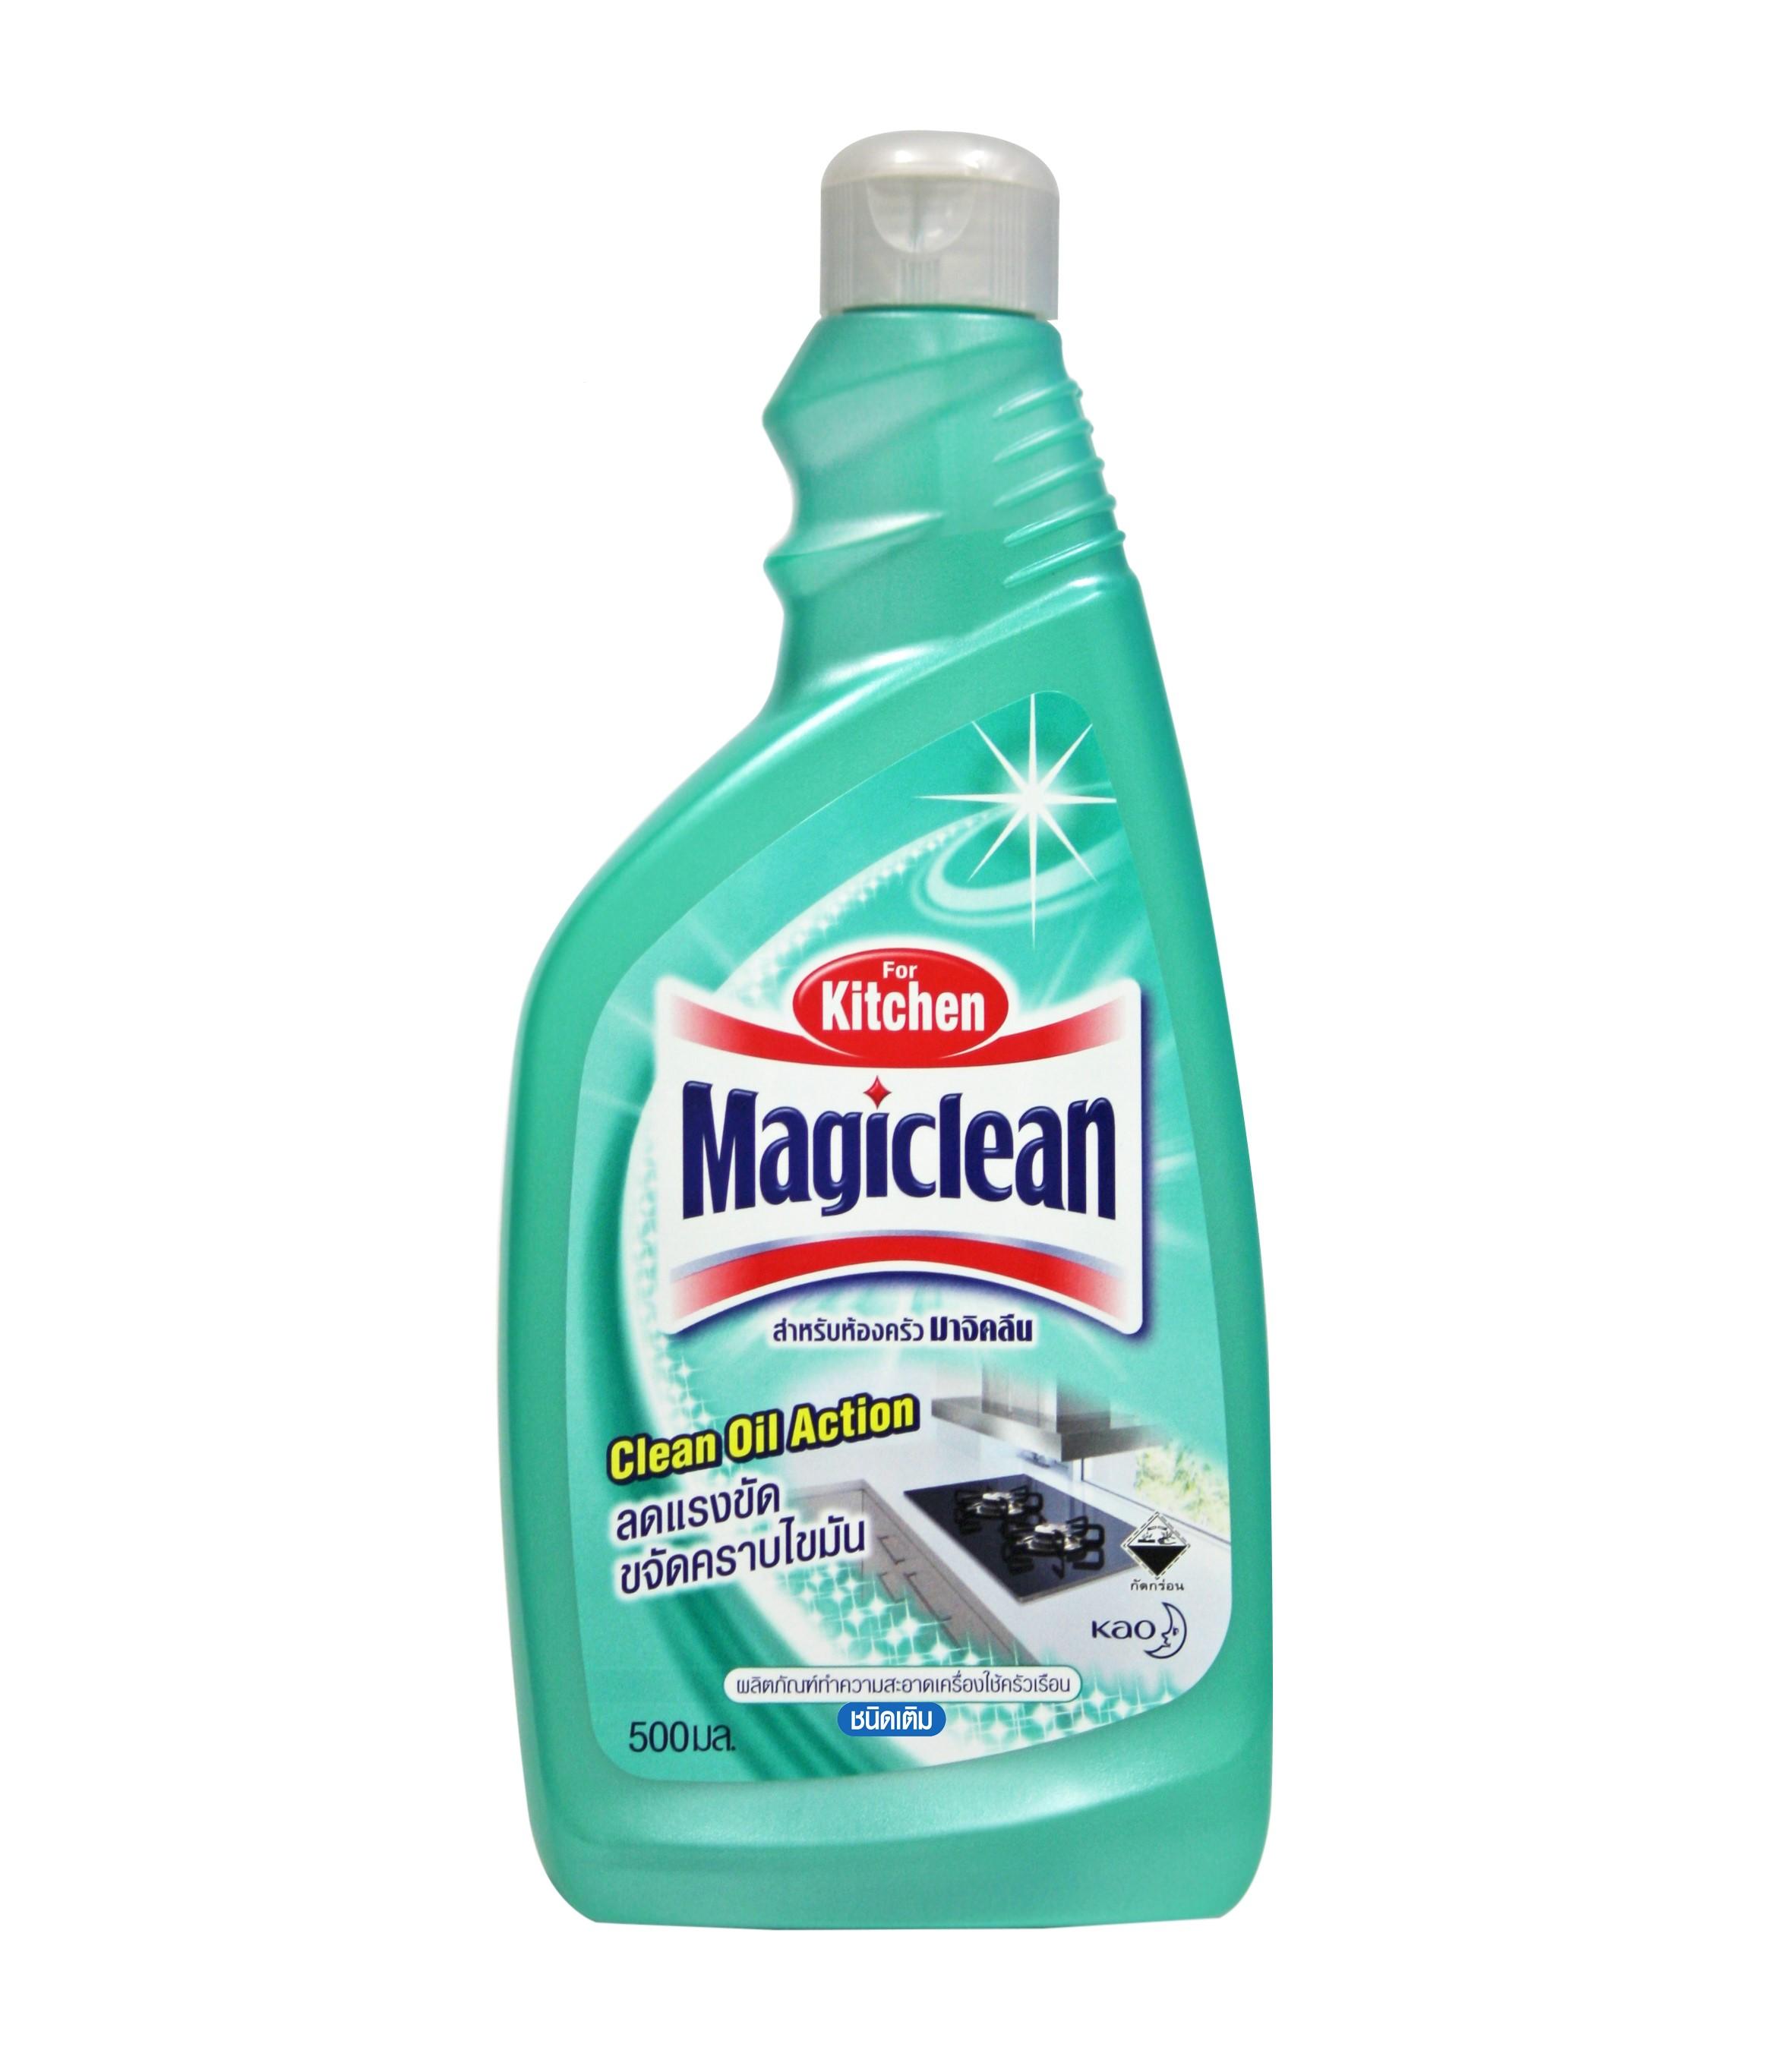 มาจิคลีน น้ำยาทำความสะอาดห้องครัว สเปรย์ ชนิดเติม 500มล Magiclean Kitchen cleaner spray refill 500ml น้ำยาทำความสะอาดห้องครัว